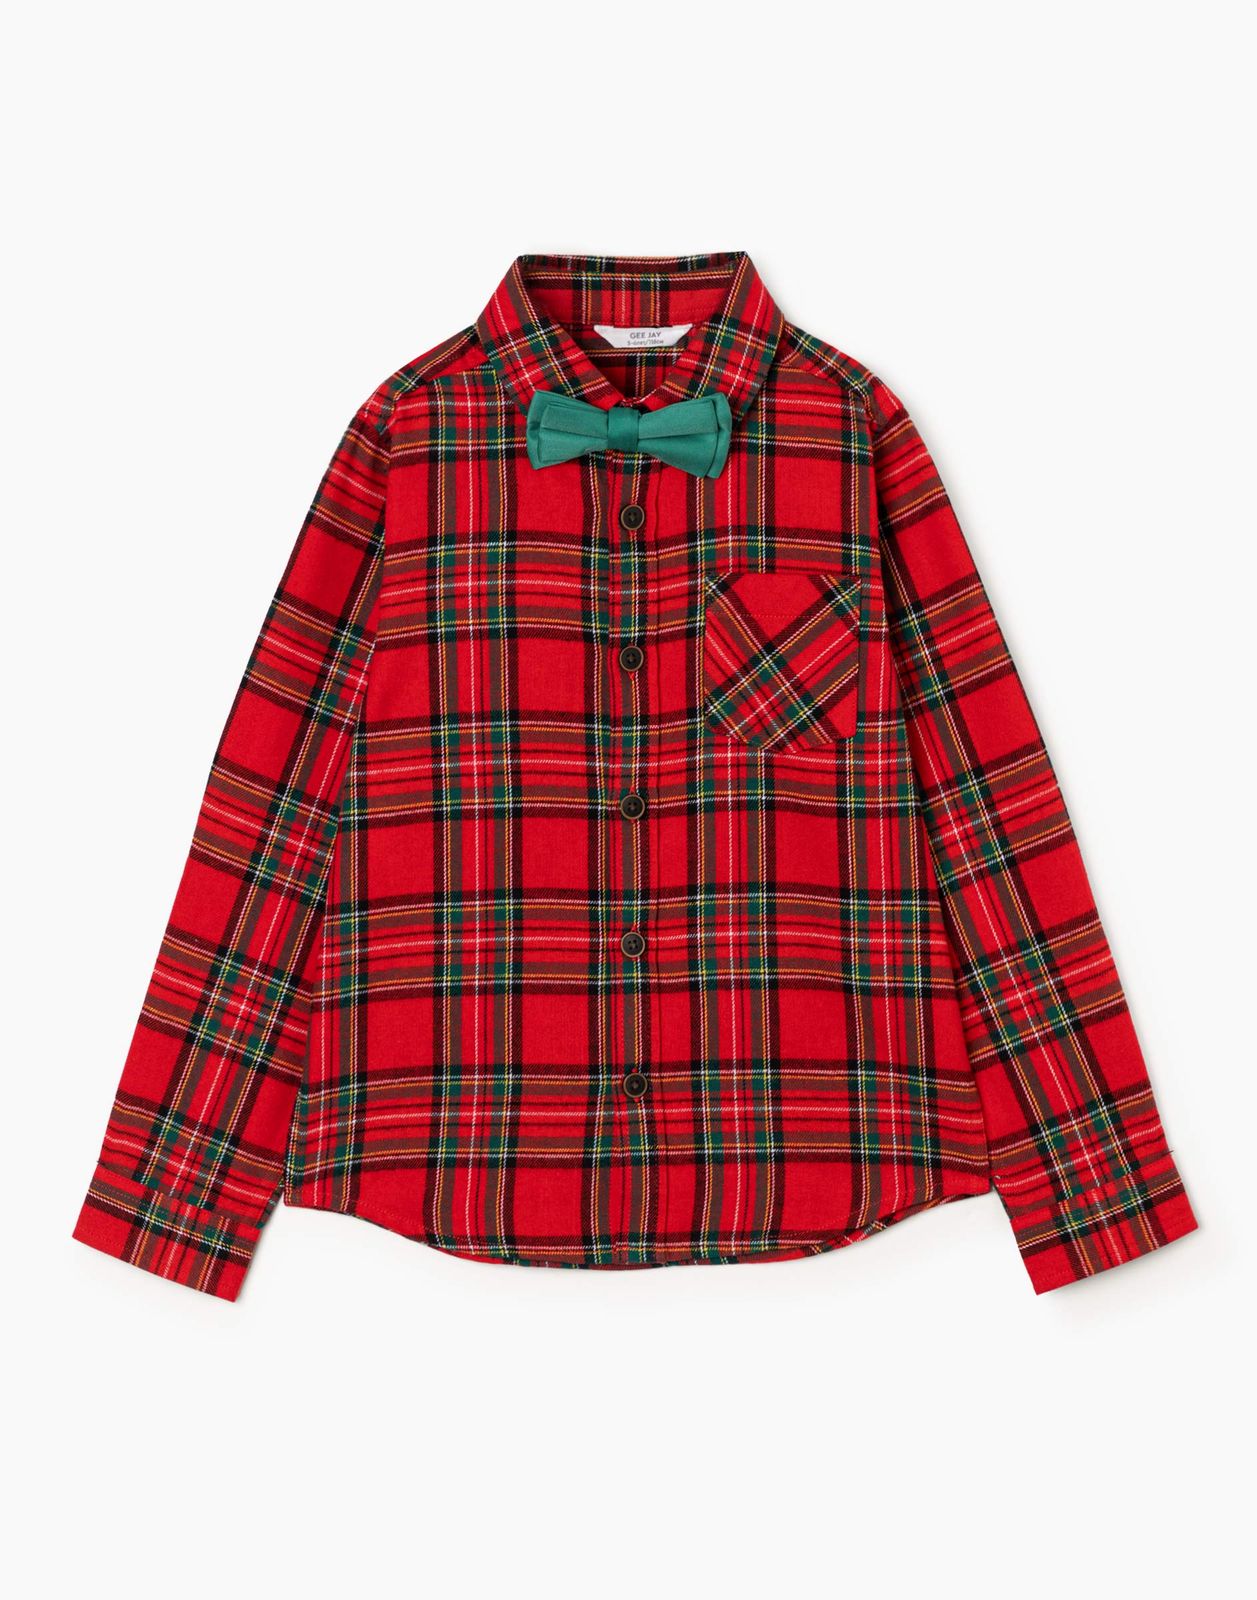 Рубашка детская Gloria Jeans BSE000667, красный/разноцветный, 110